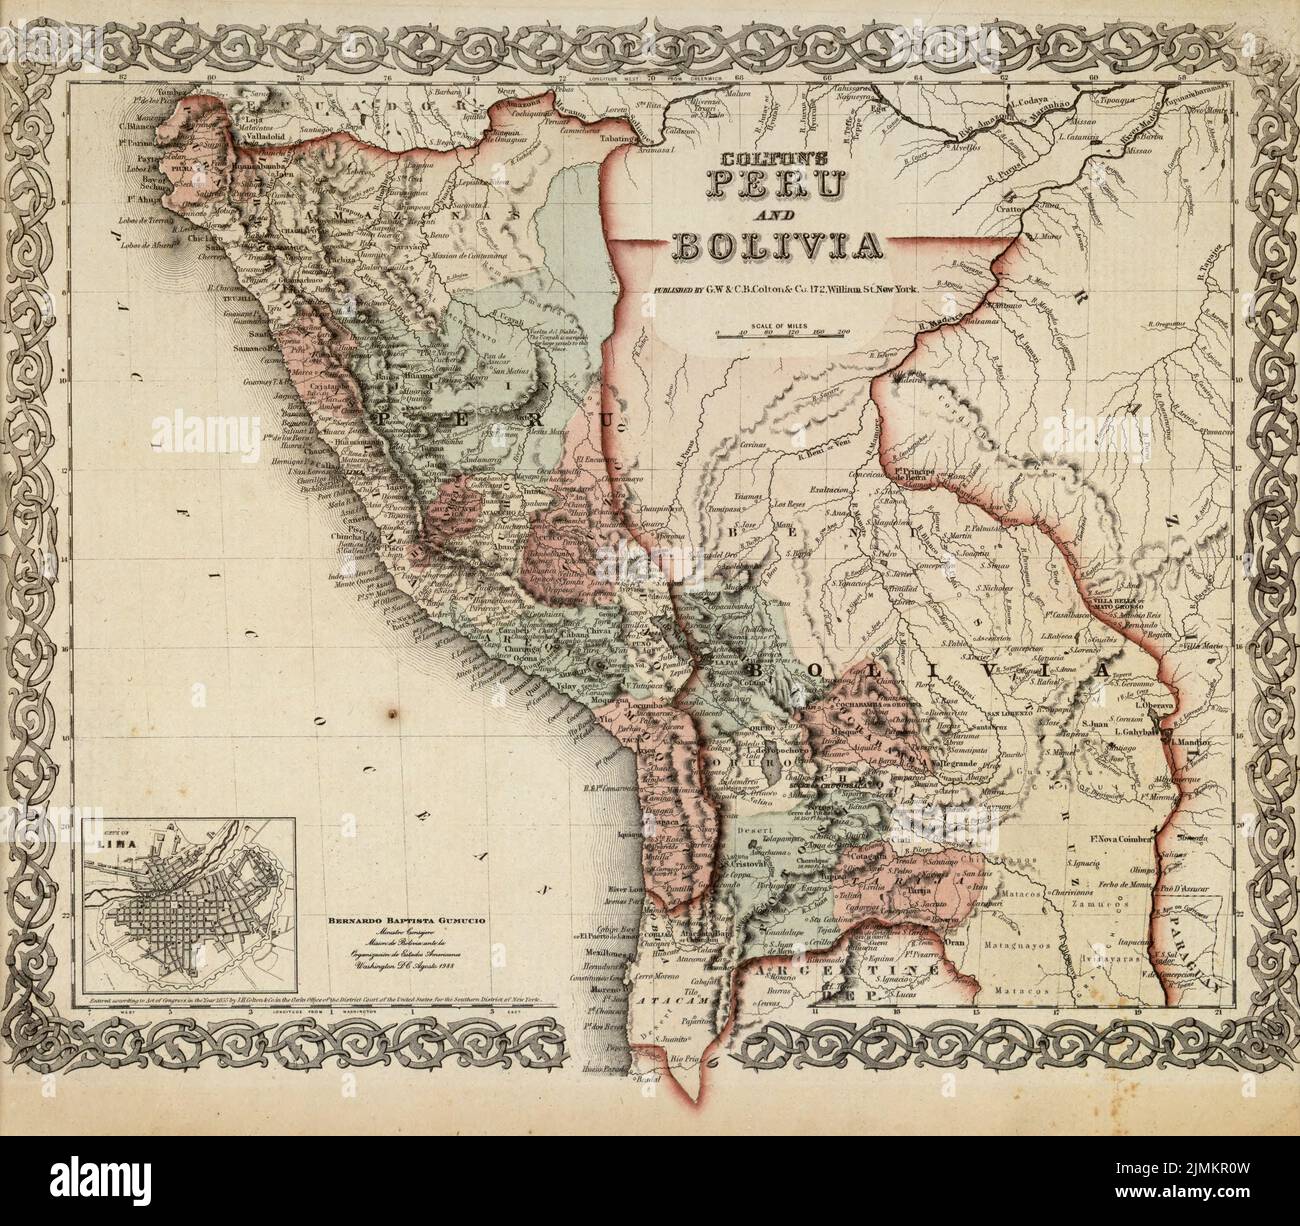 Carte du Pérou et de la Bolivie de Colton 1855 Banque D'Images